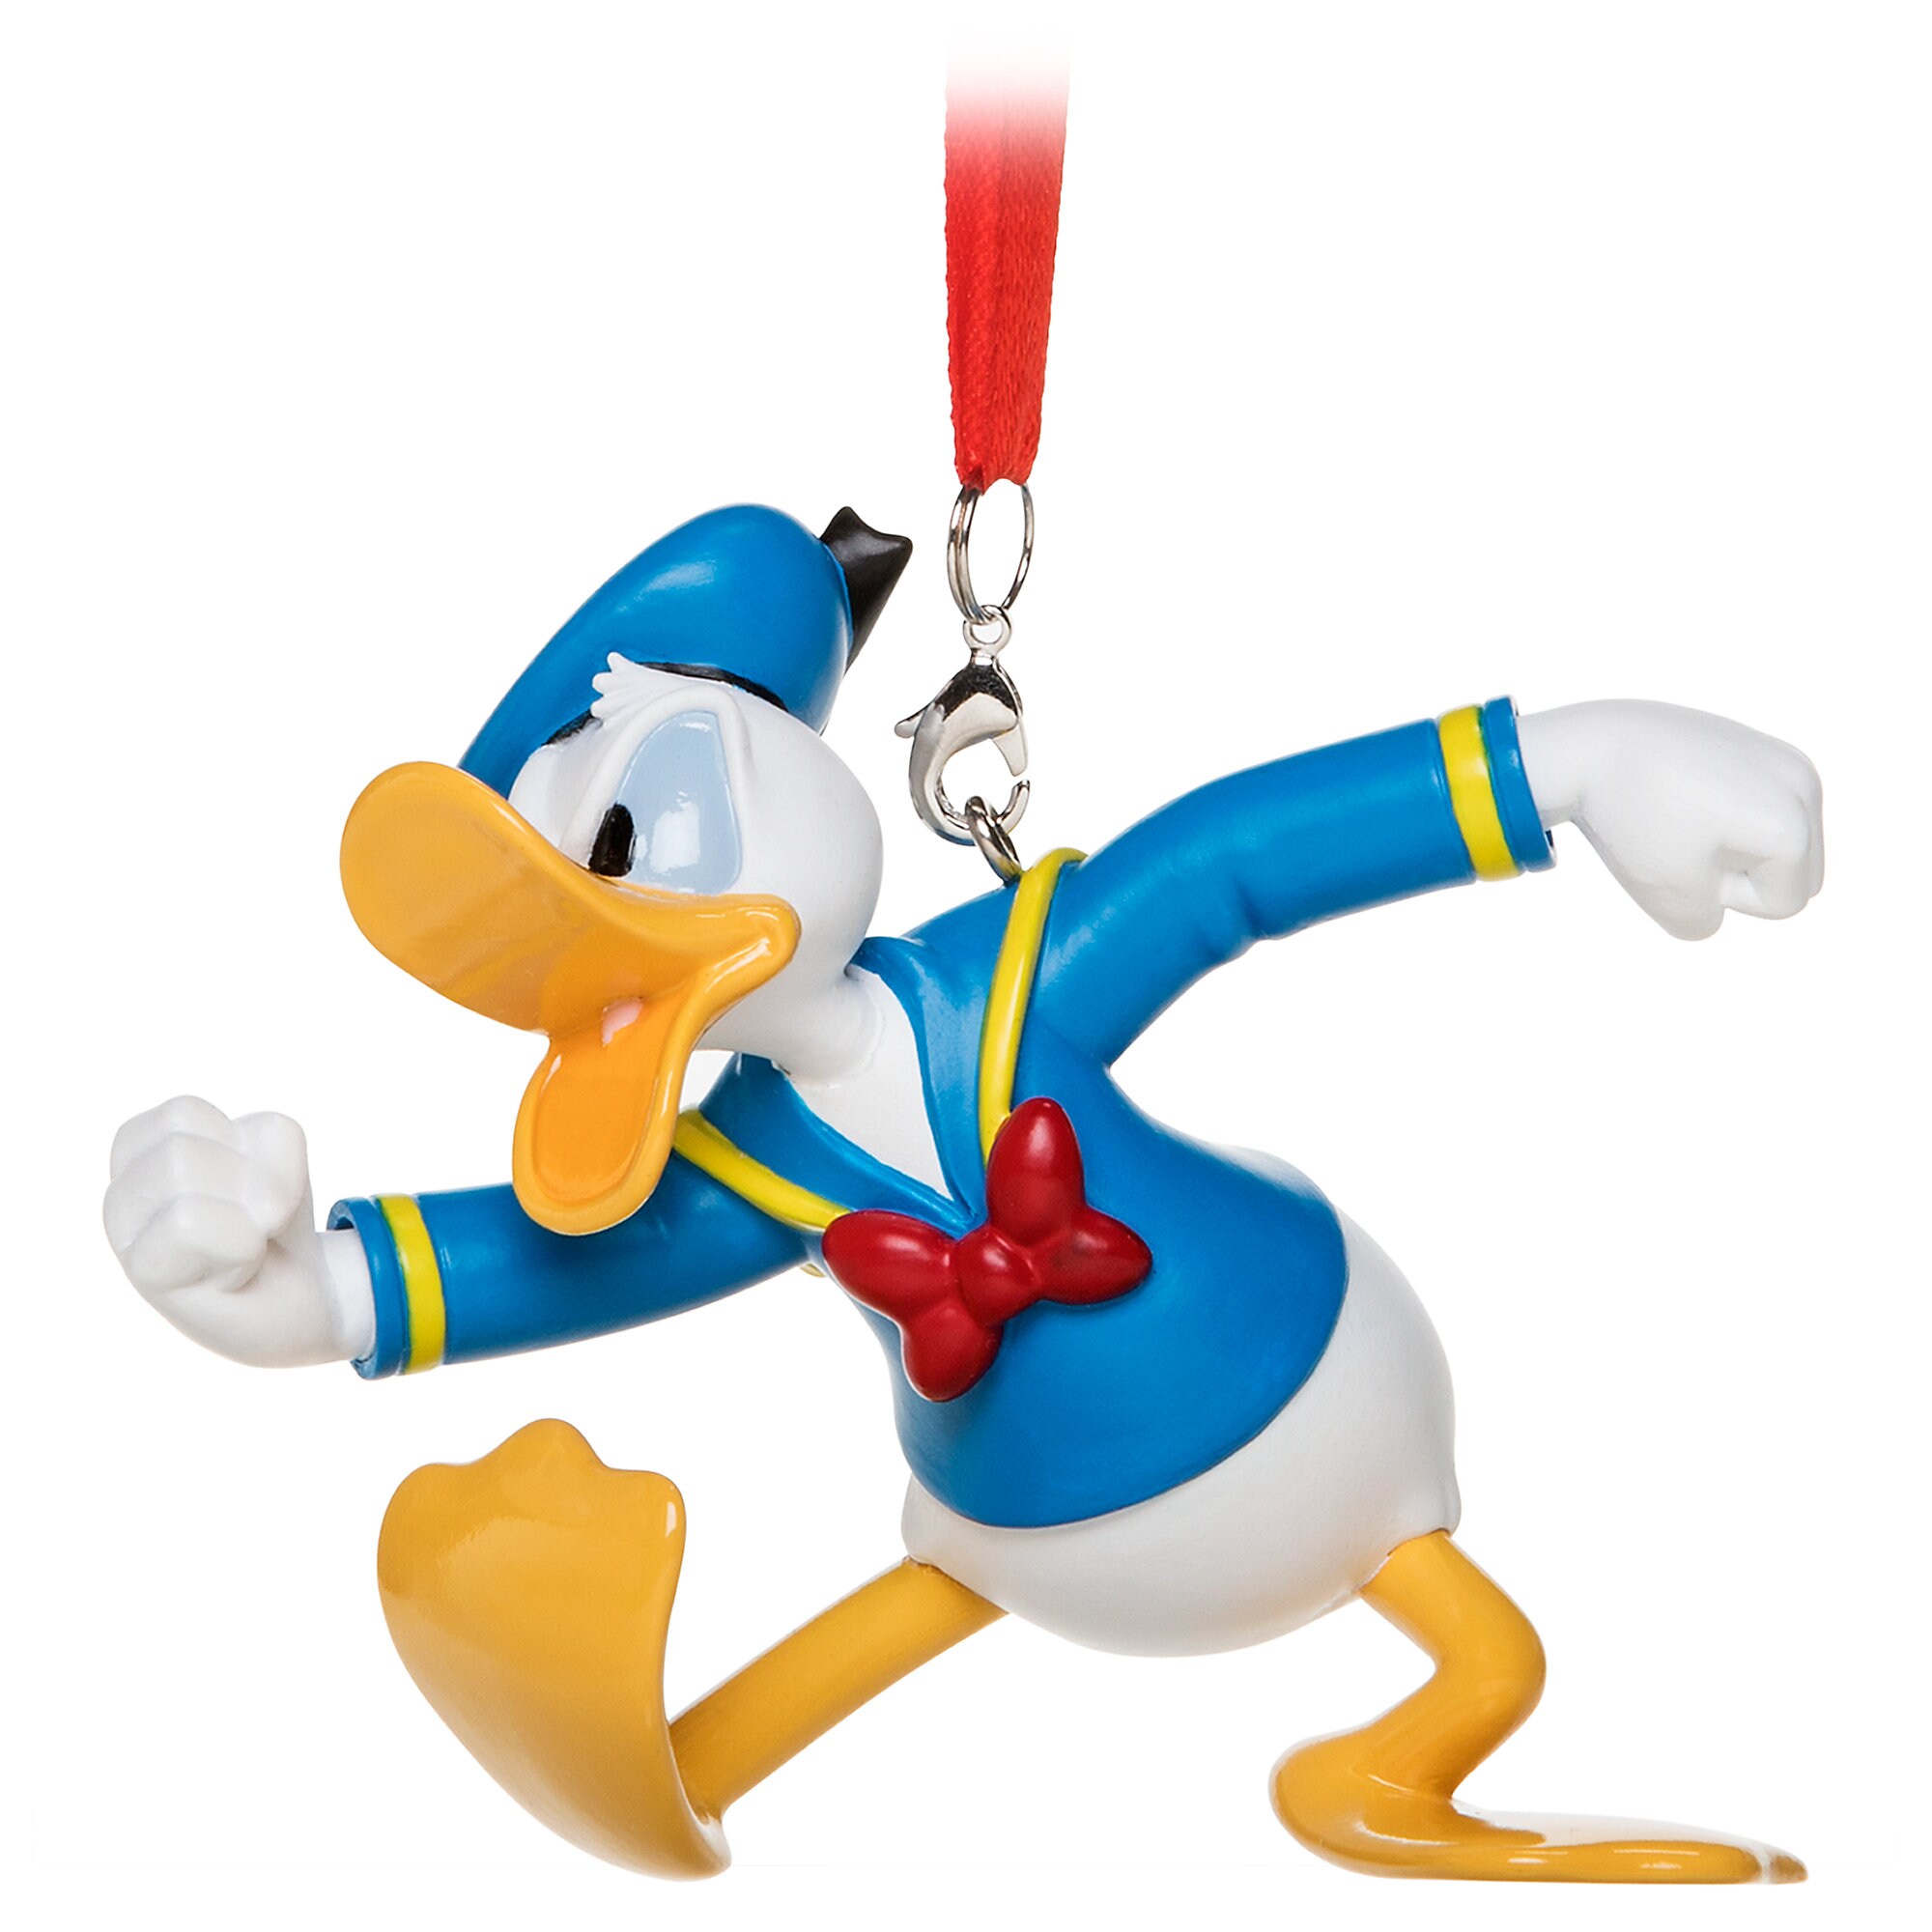 Donald Duck Figural Ornament